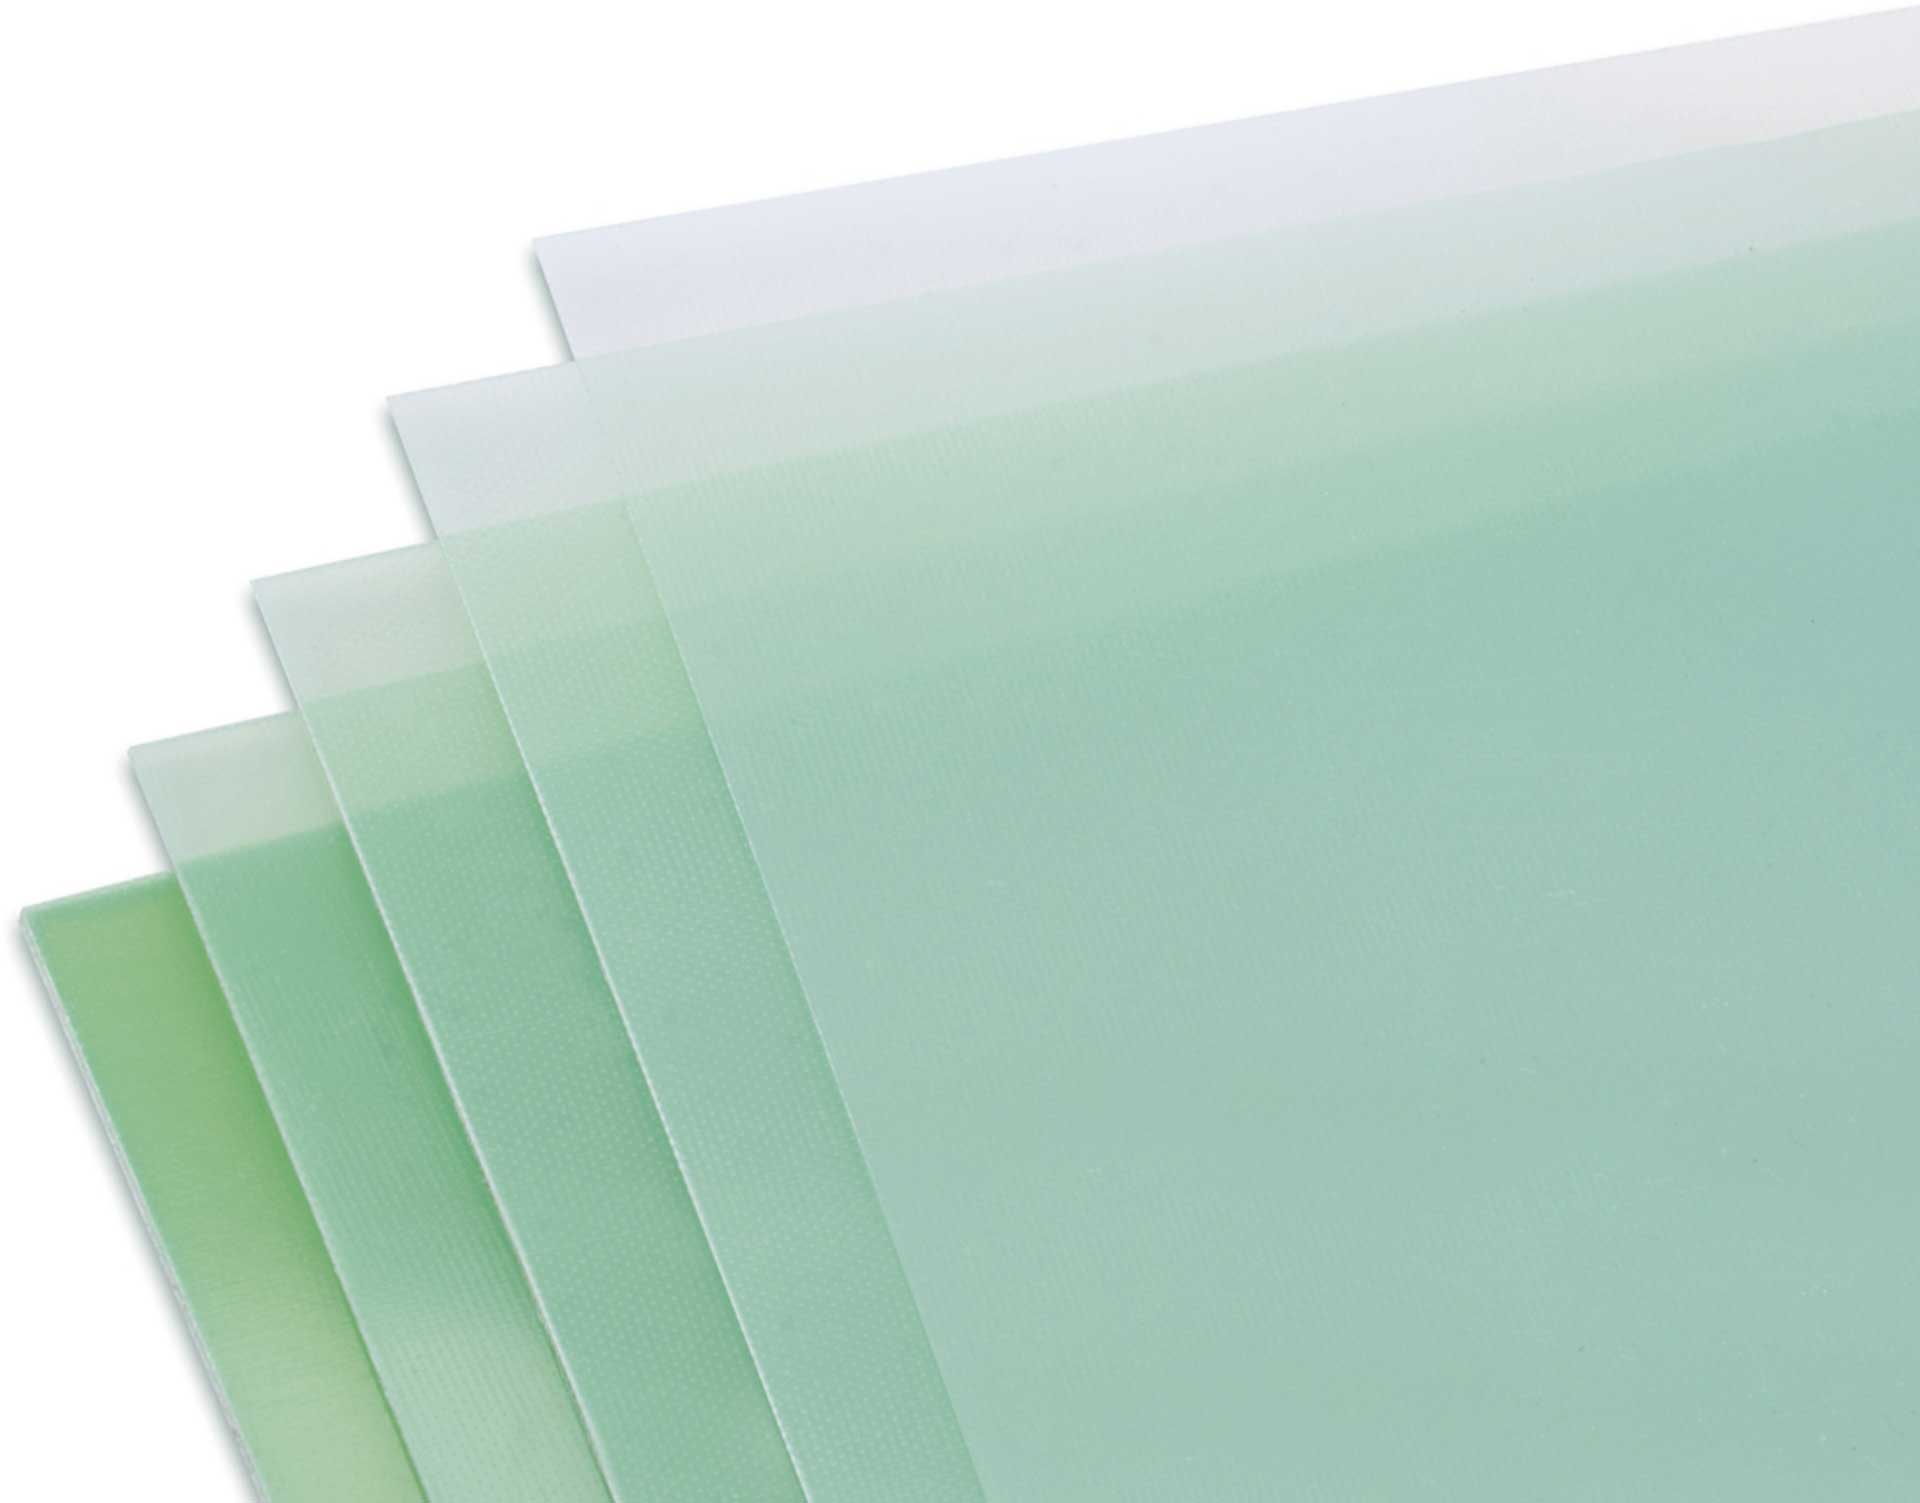 Modellbau Lindinger GFK-Platte 1,5x610x340mm matt, grünlich transparent